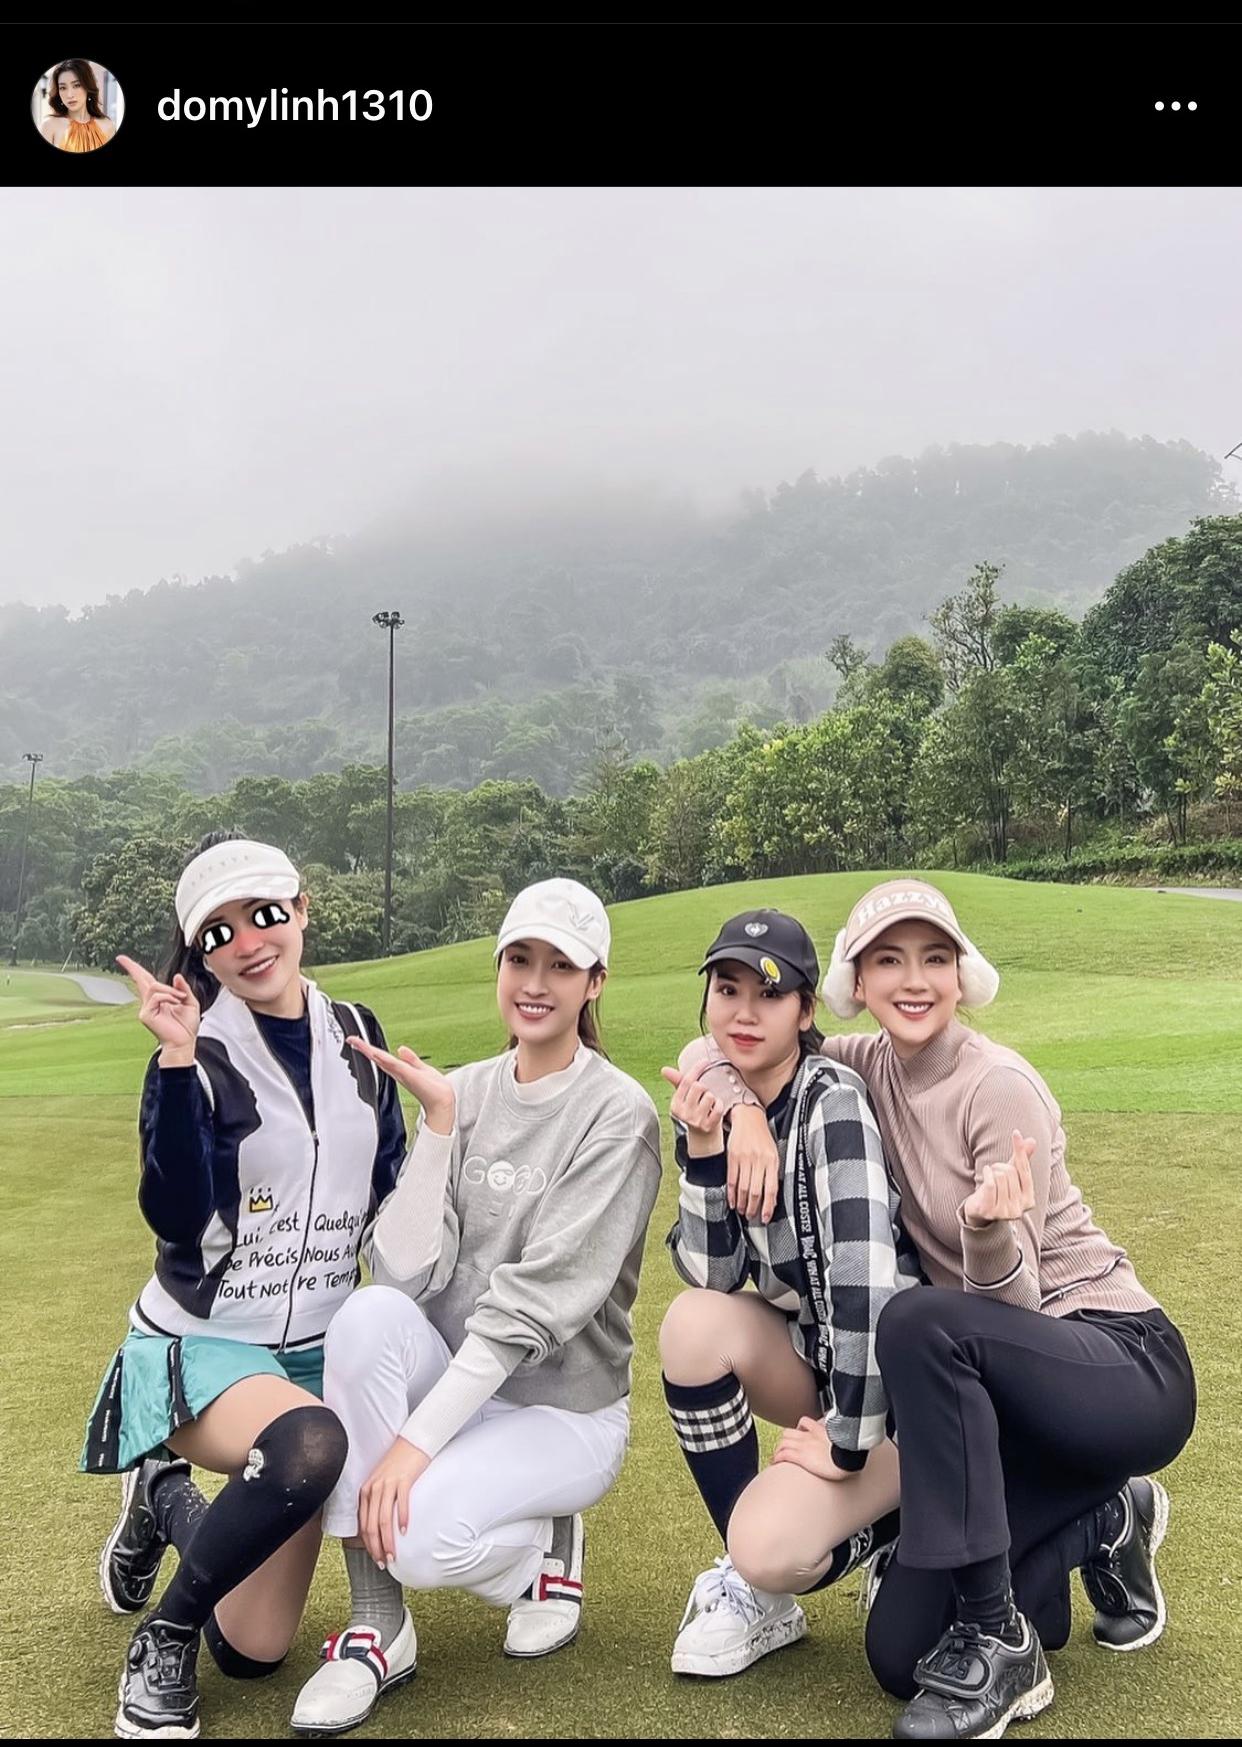 Hoa hậu Đỗ Mỹ Linh đăng tải hình ảnh tụ tập cùng bạn bè trên sân golf